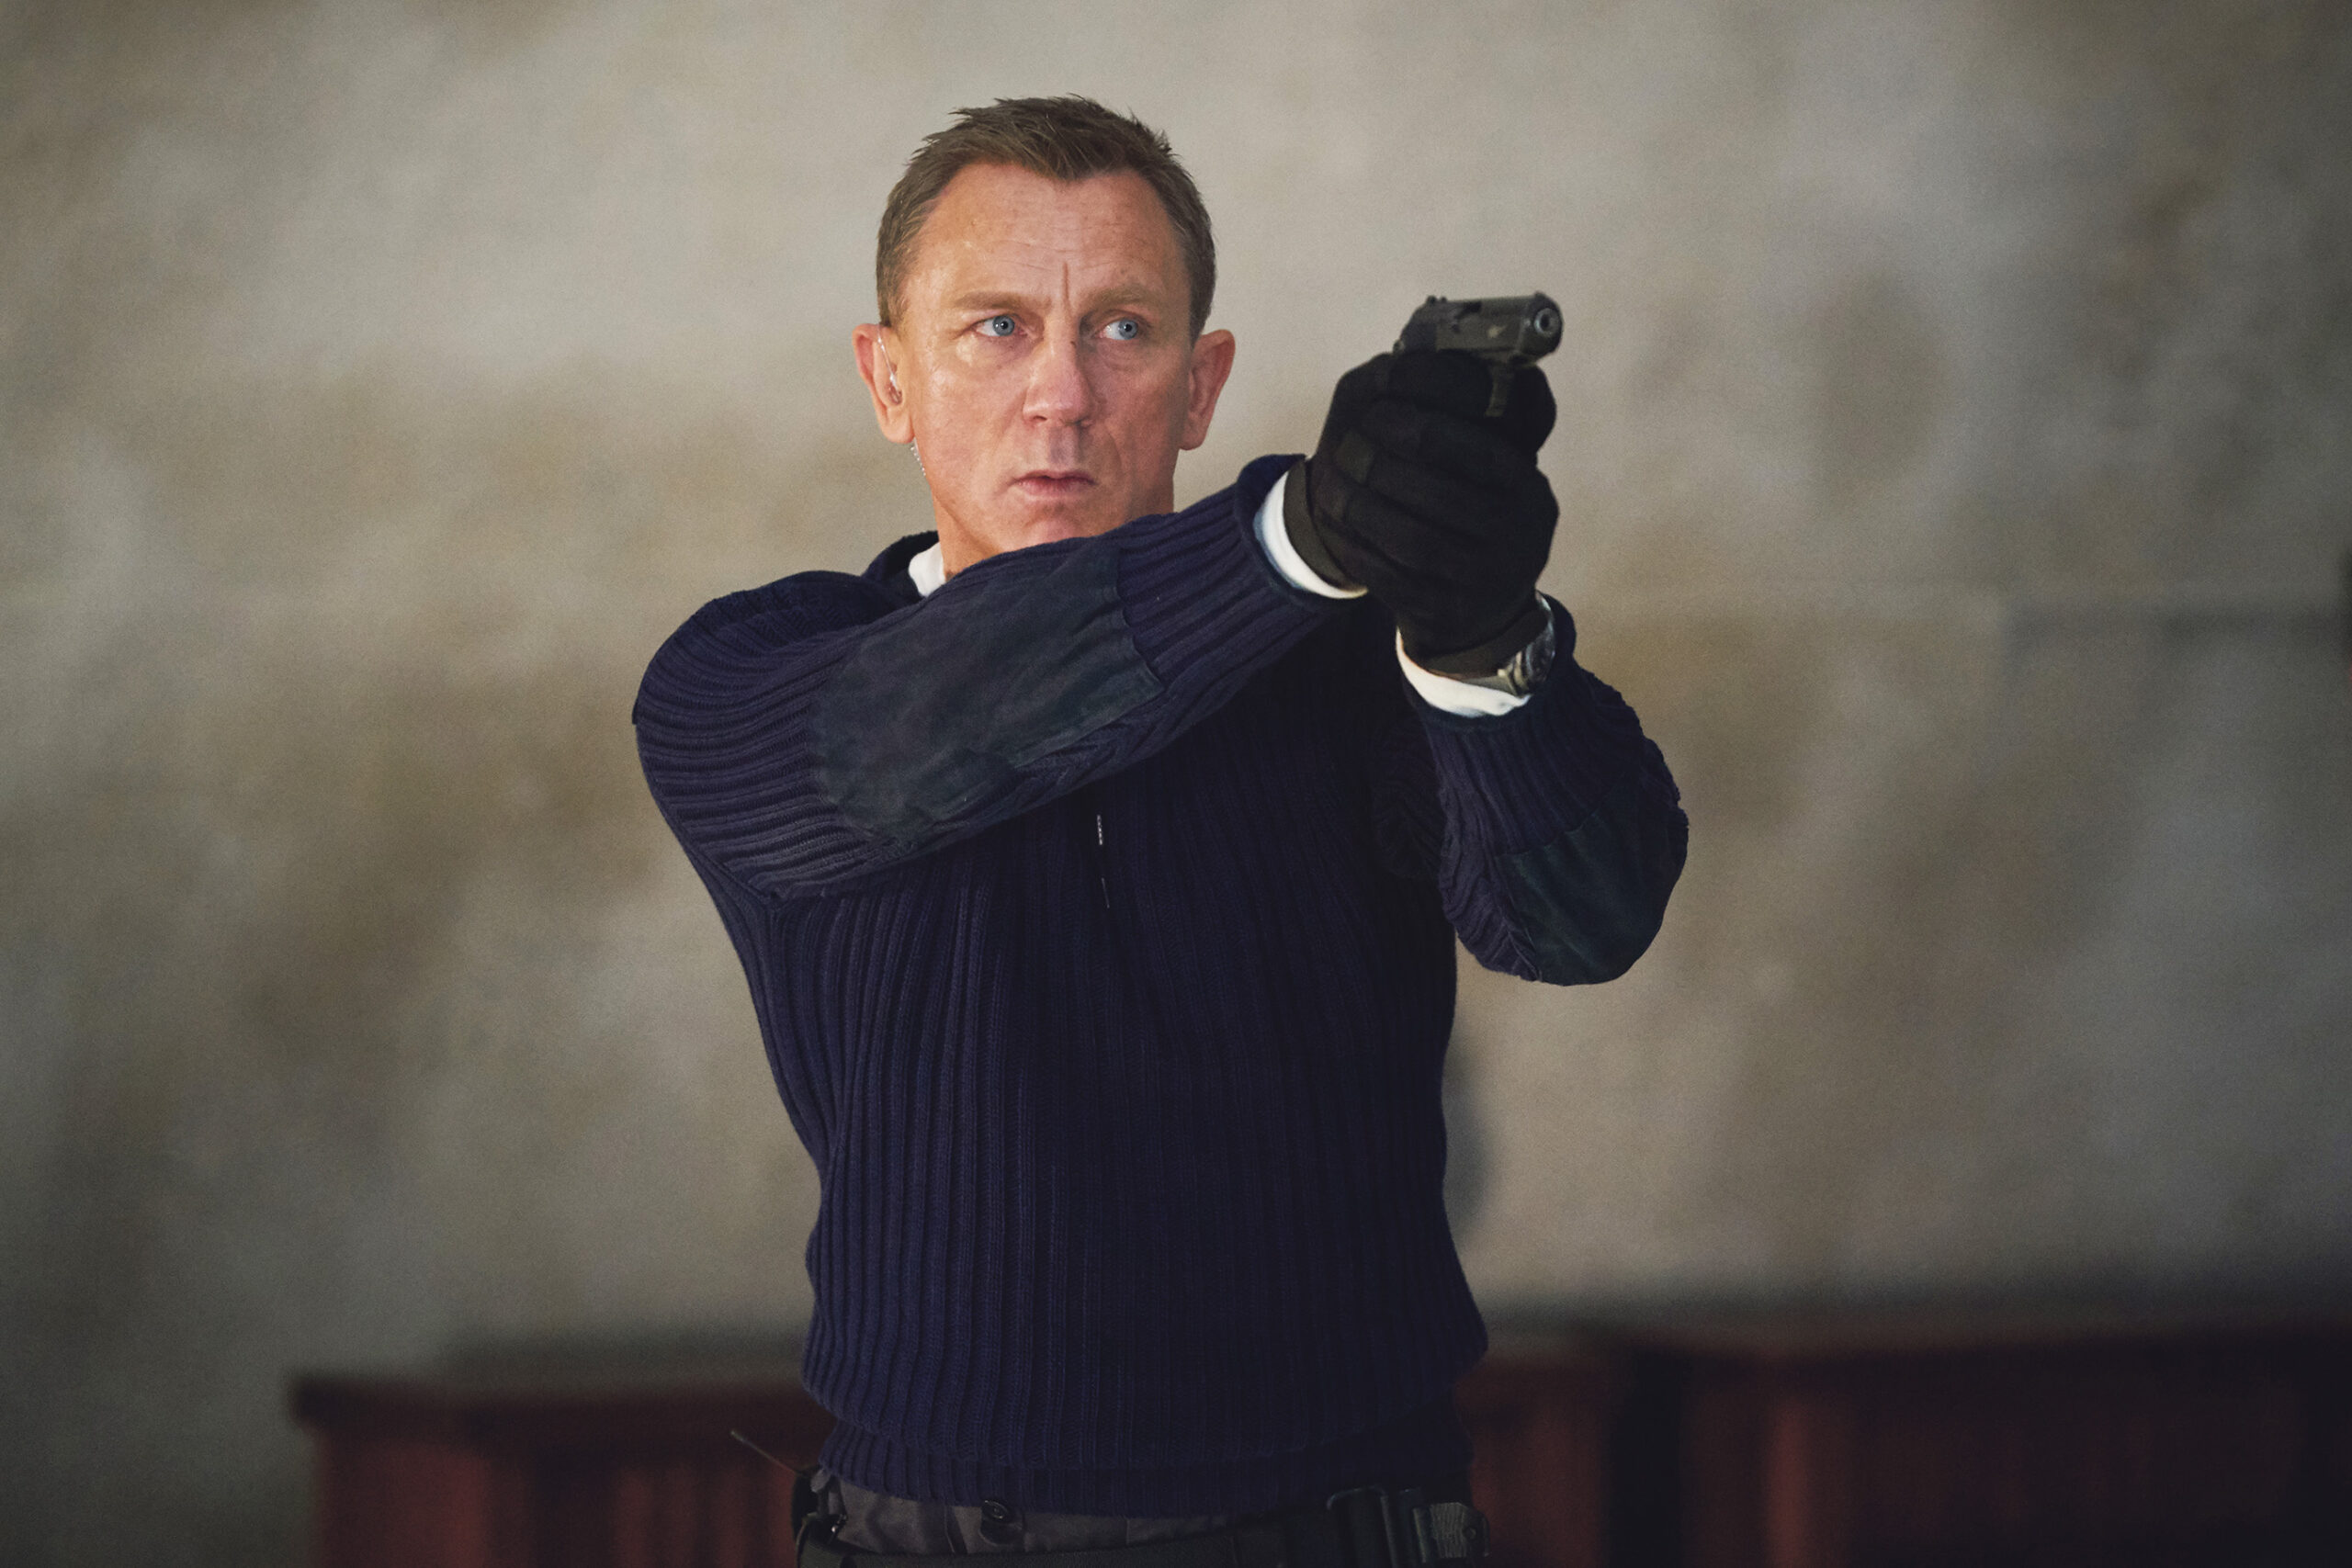 Charakterkopf Daniel Craig alias James Bond mit der 007-Lizenz zum Töten: waghalsige Action, Stil, Charme, Exotik und Reminiszenzen an die Bond-Historie sind vorprogrammiert. © Nicola Dove | MGM